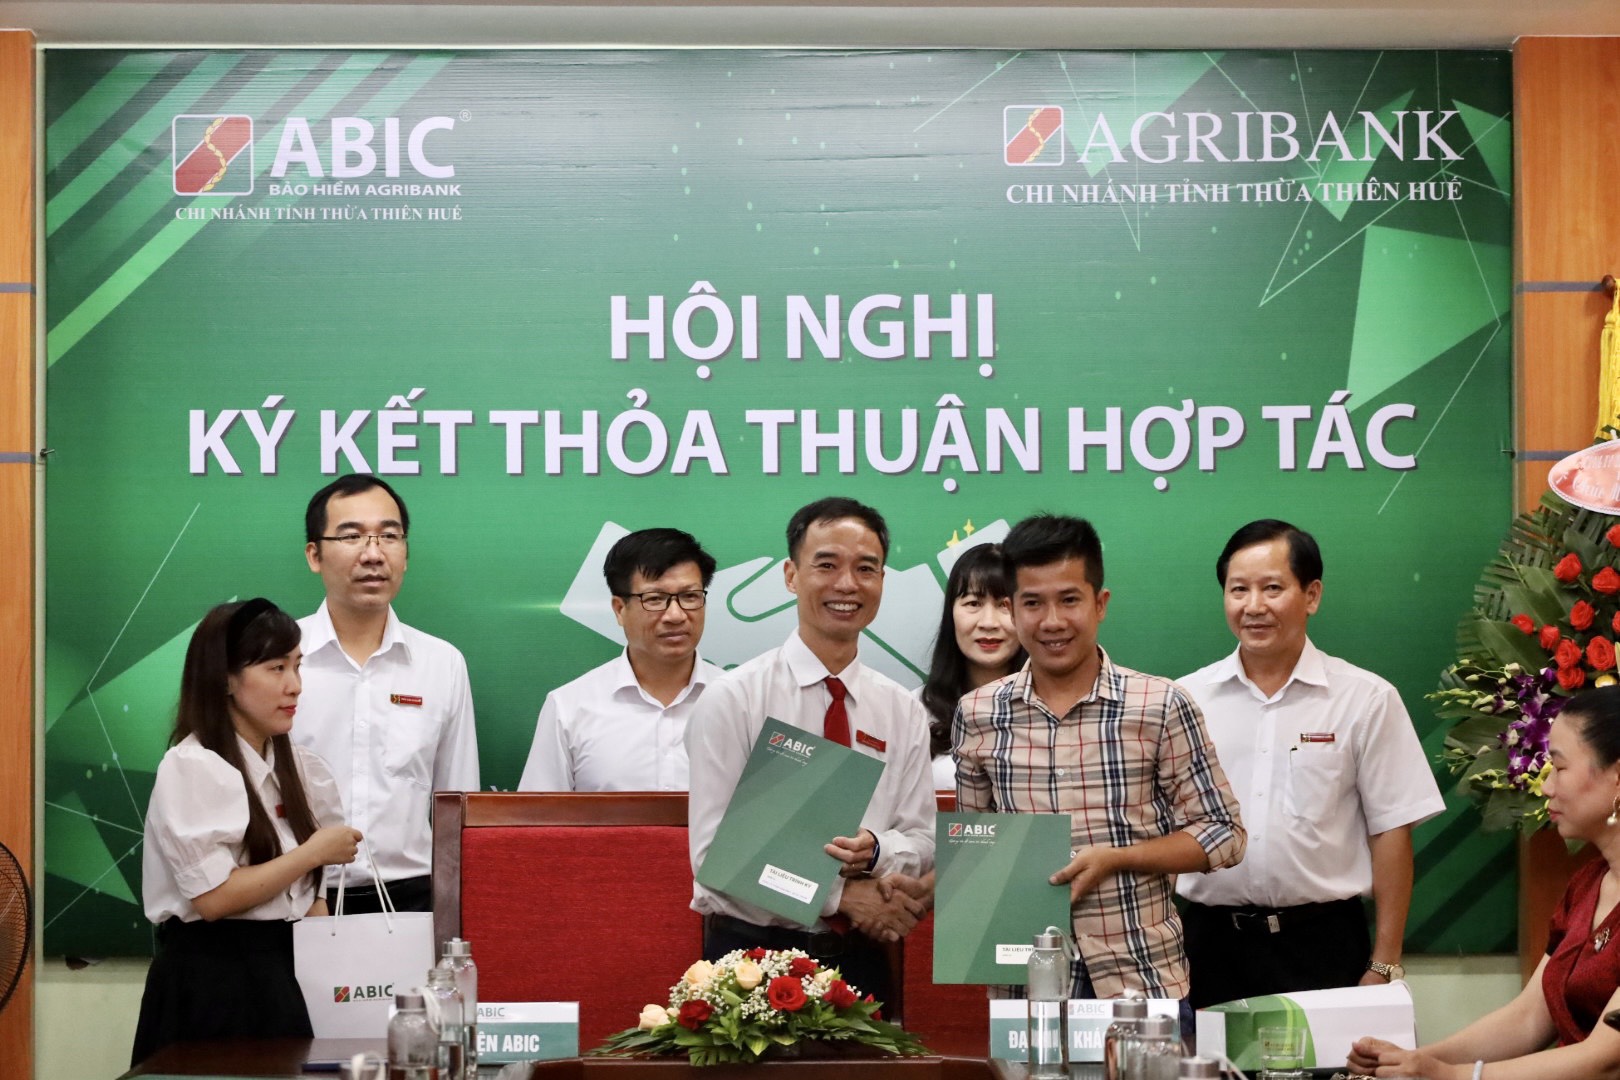 Bảo hiểm Agribank Chi nhánh Thừa Thiên Huế chính thức đi vào hoạt động - Ảnh 1.